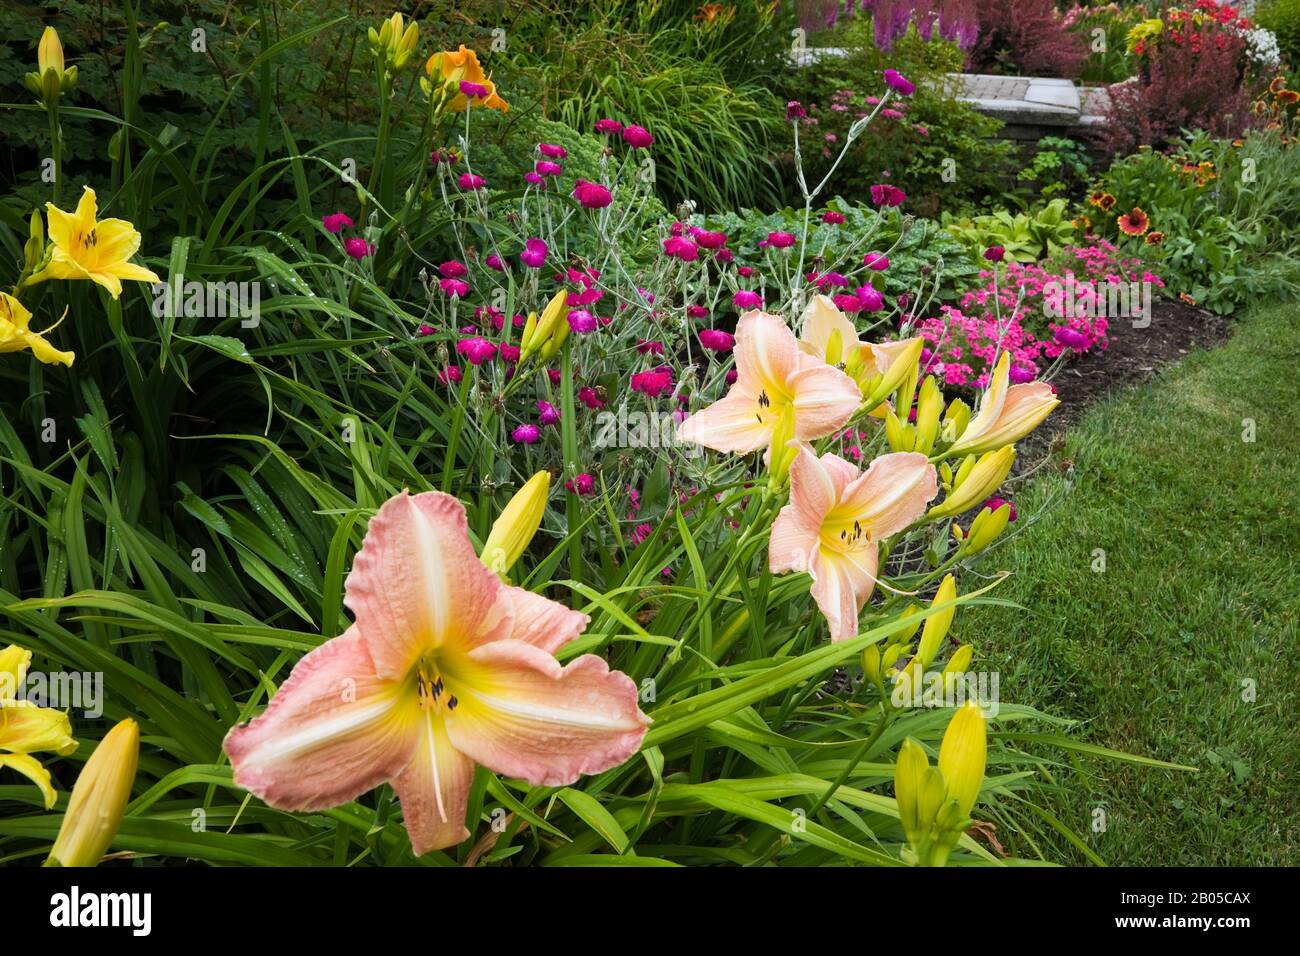 Bordure aux fleurs vivaces comme le jaune, le rose, le blanc Hemerocallis - Daylilas, le violet Phlox, Berberis thunbergii 'Rose Glow' - la baie japonaise. Banque D'Images